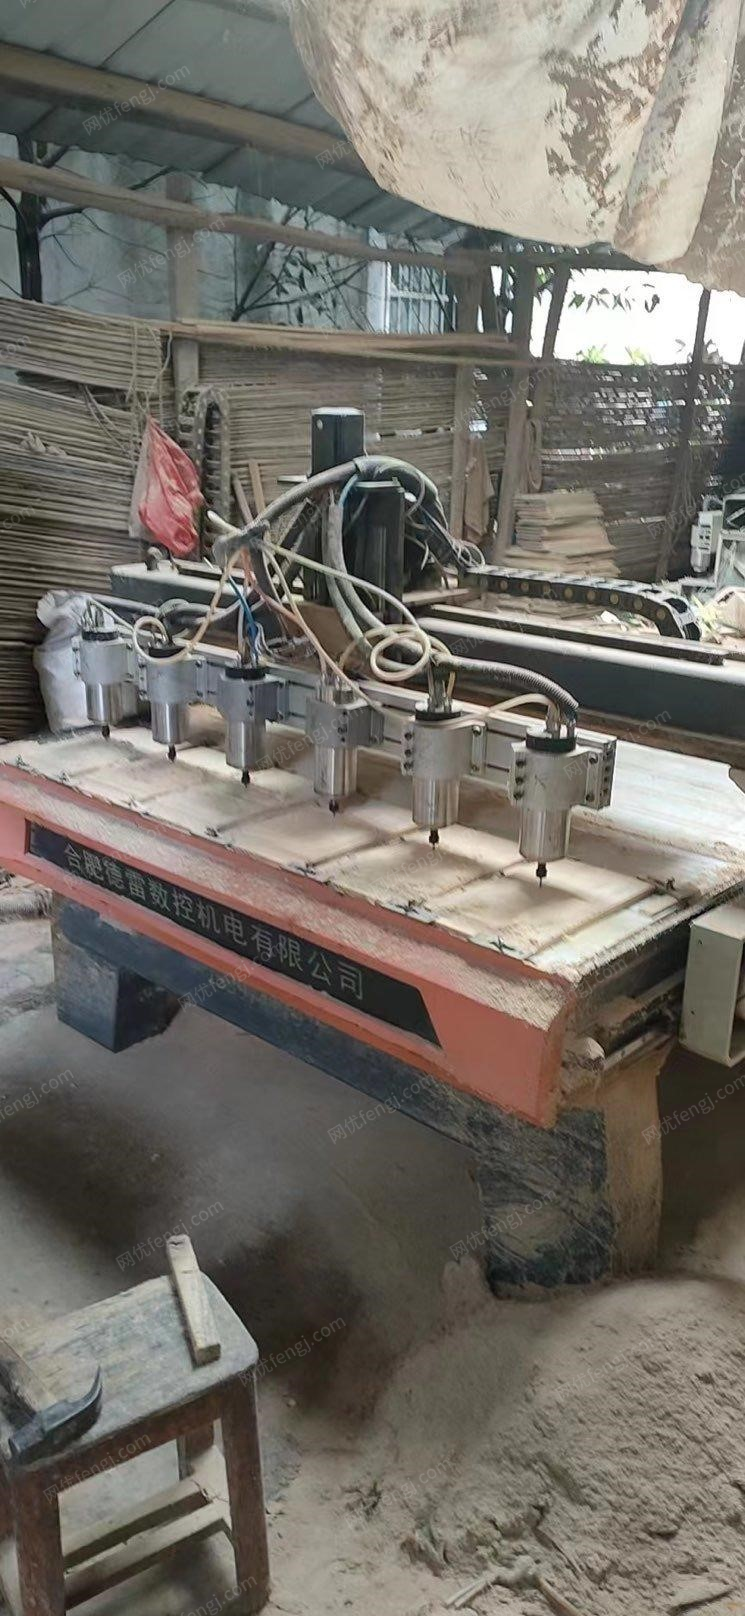 湖南衡阳因改行了，二手营业中的2018年合肥1325/2720自动木工雕刻机打包出售,用了4年